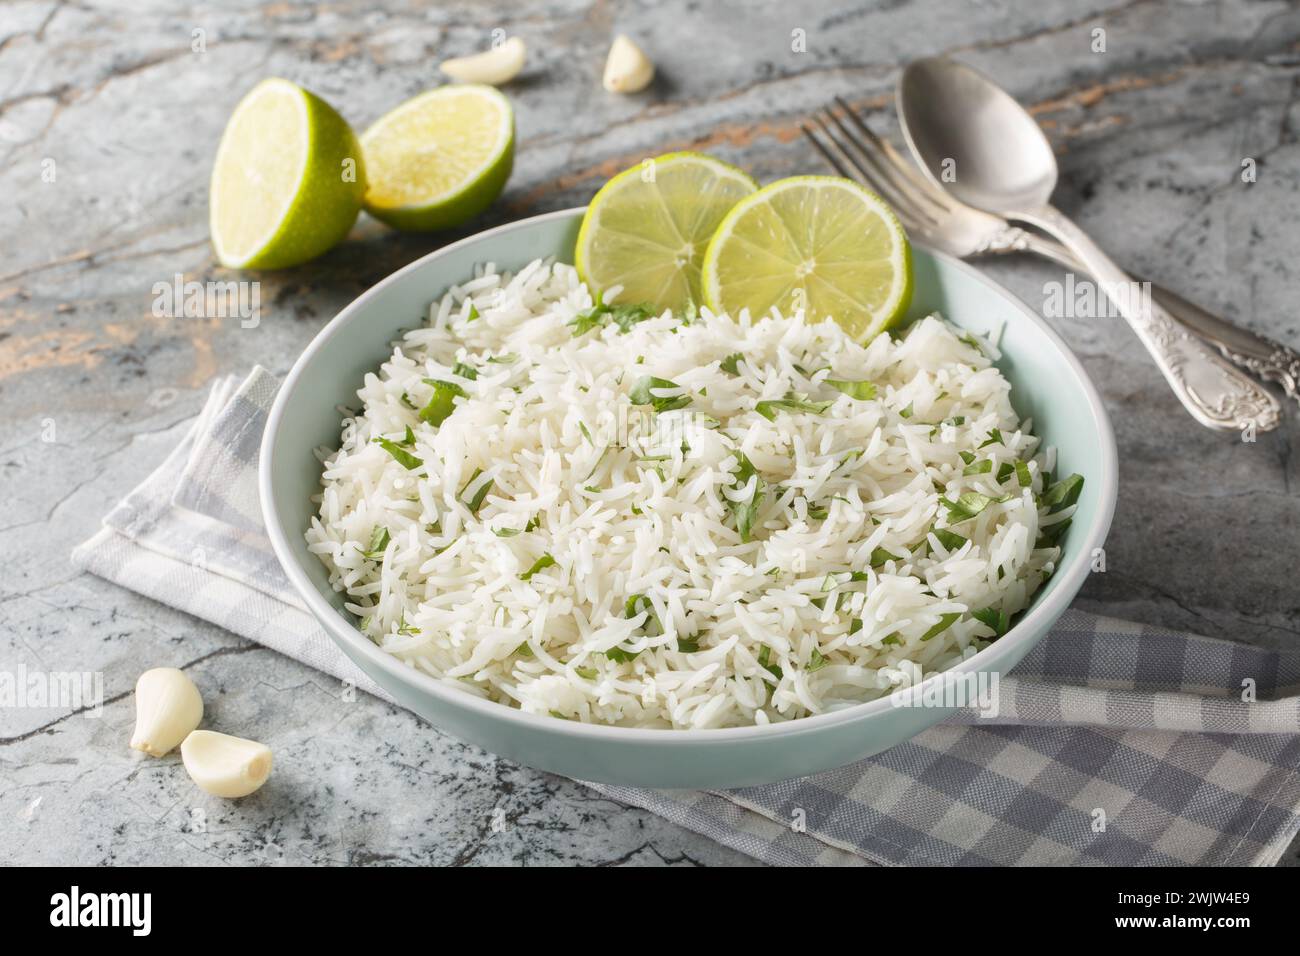 Délicieux riz à l'ail, à la coriandre, au citron vert et au zeste gros plan dans un bol sur la table. Horizontal Banque D'Images